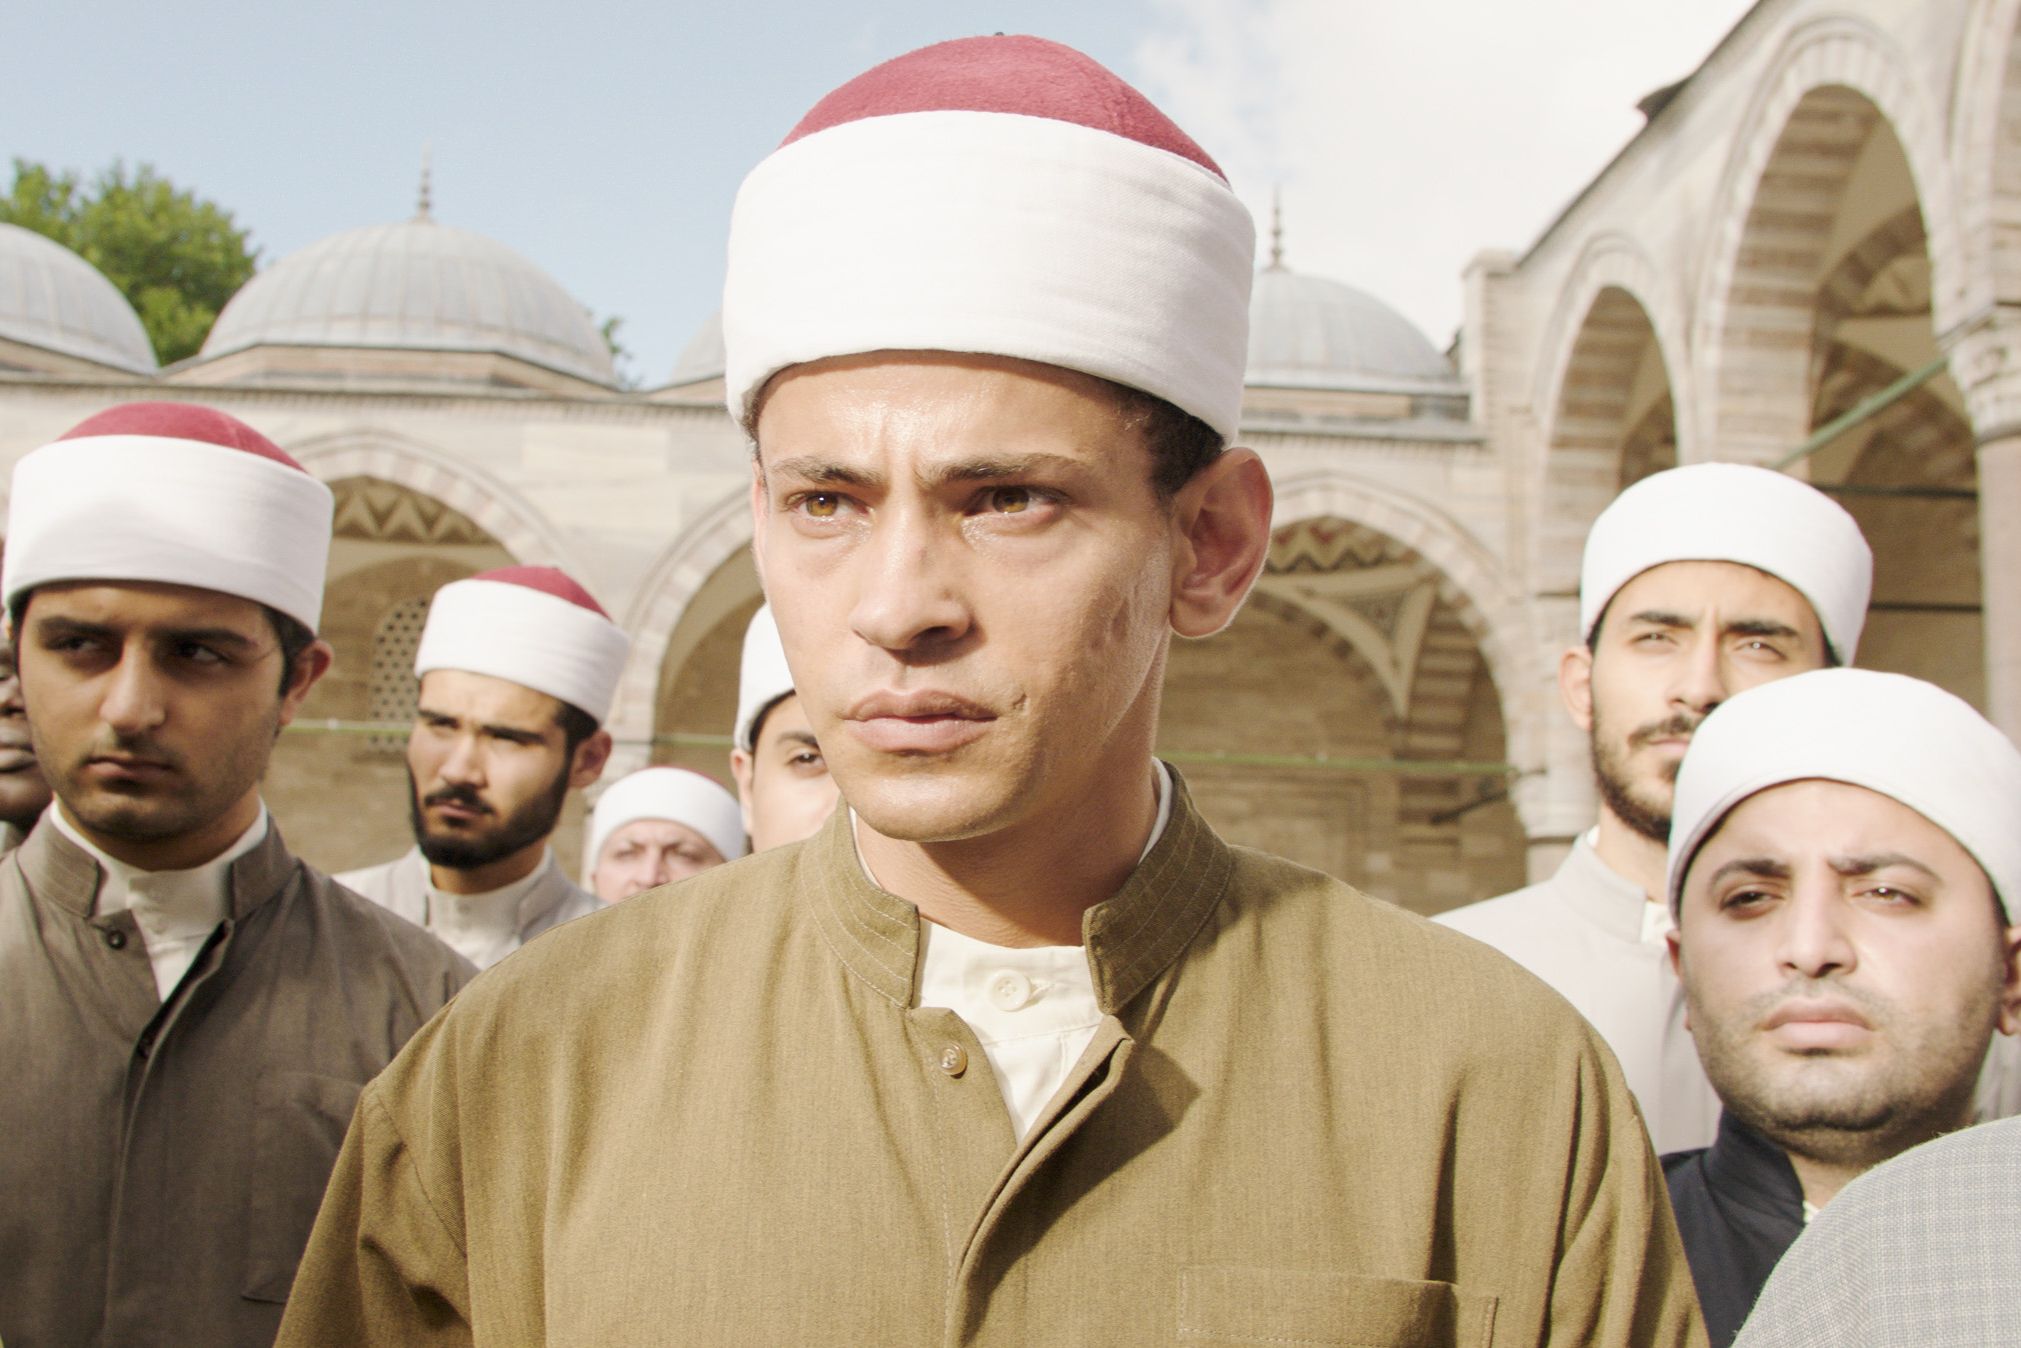 Foto från filmen där huvudpersonen står främst med ett antal män bakom sig, och en moskéliknande byggnad i bakgrunden.